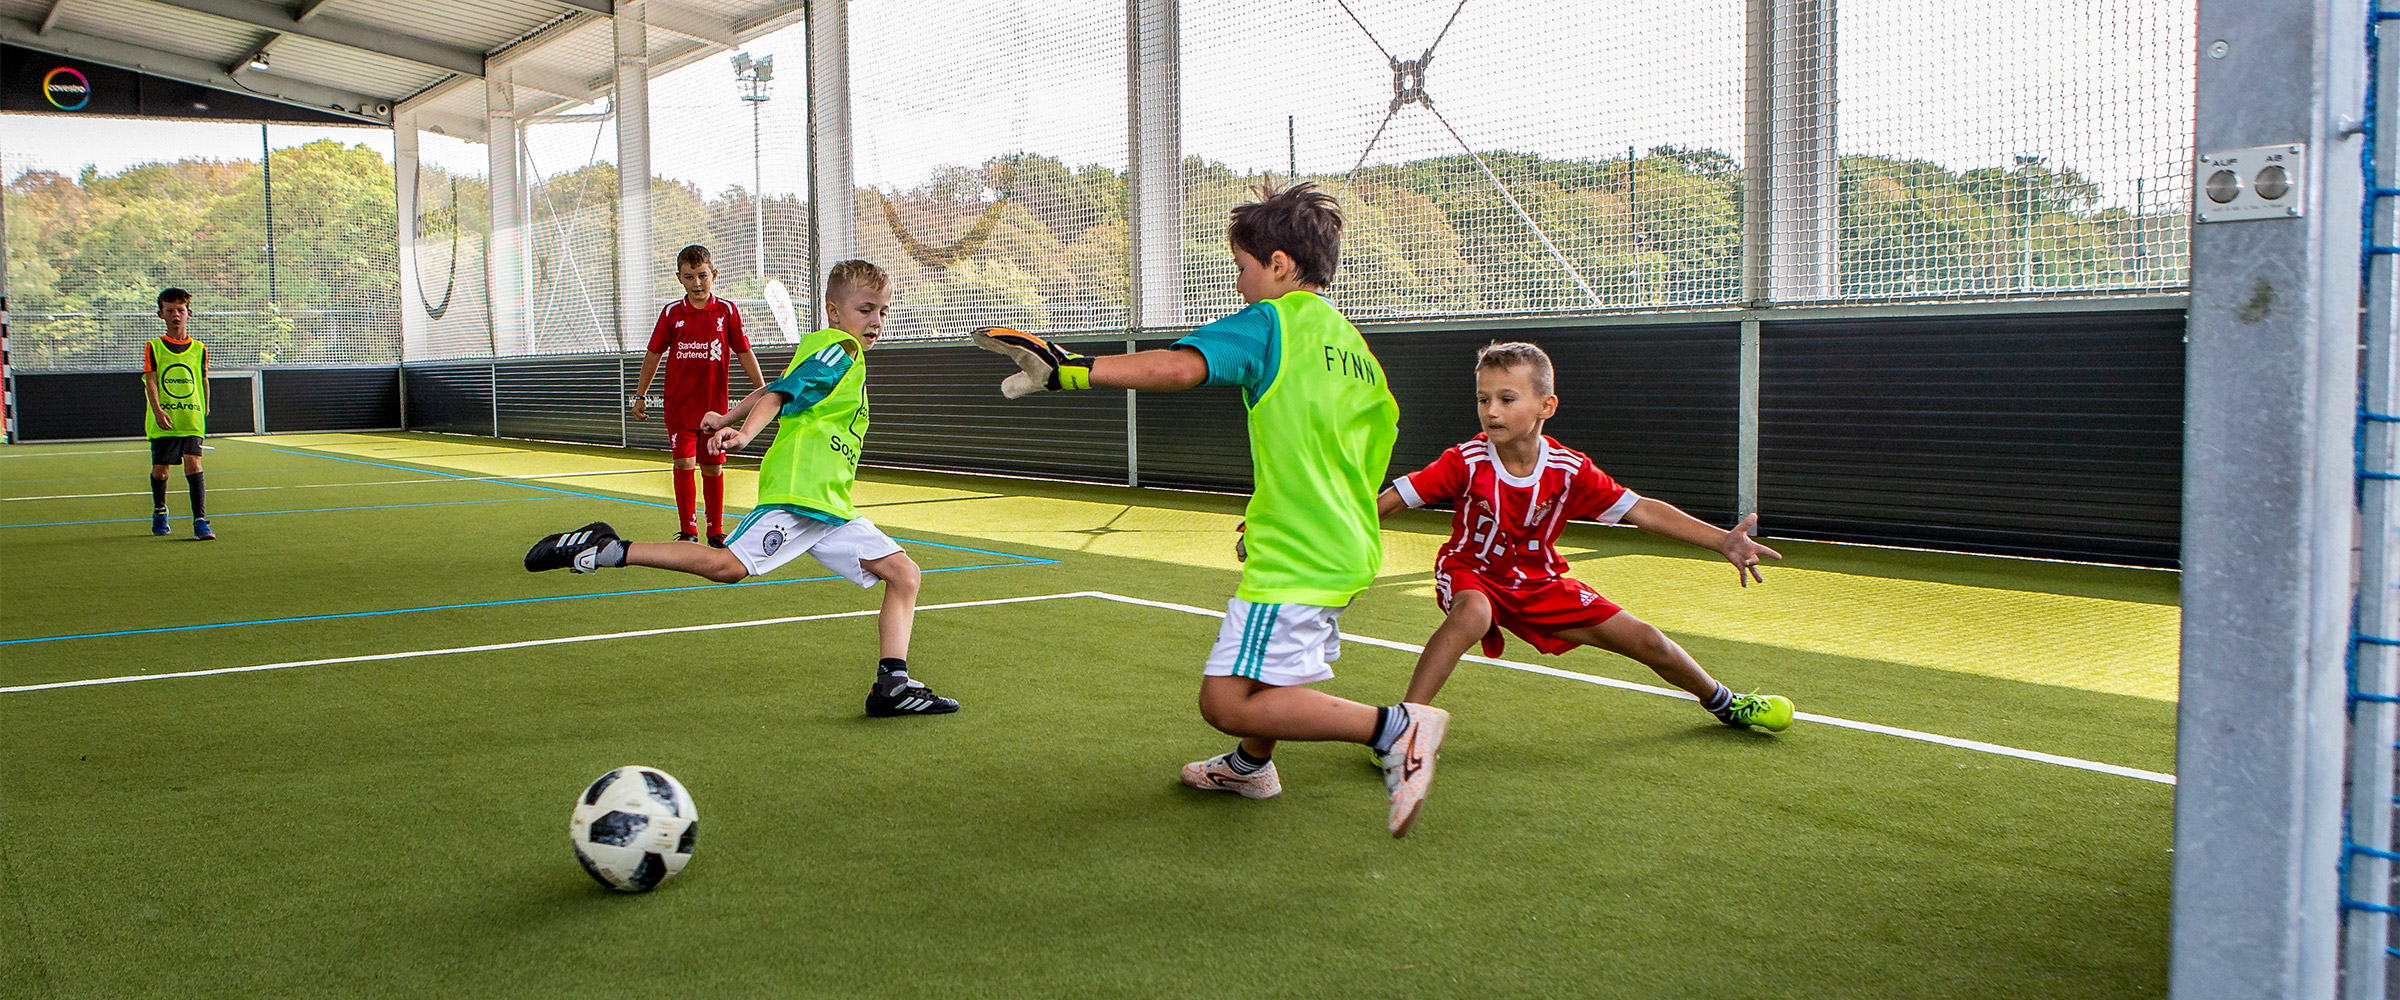 Feier Deinen Kindergeburtstag in der SoccArena Krefeld. Mit Freunden Fußball spielen und die McArena Krefled nutzen.